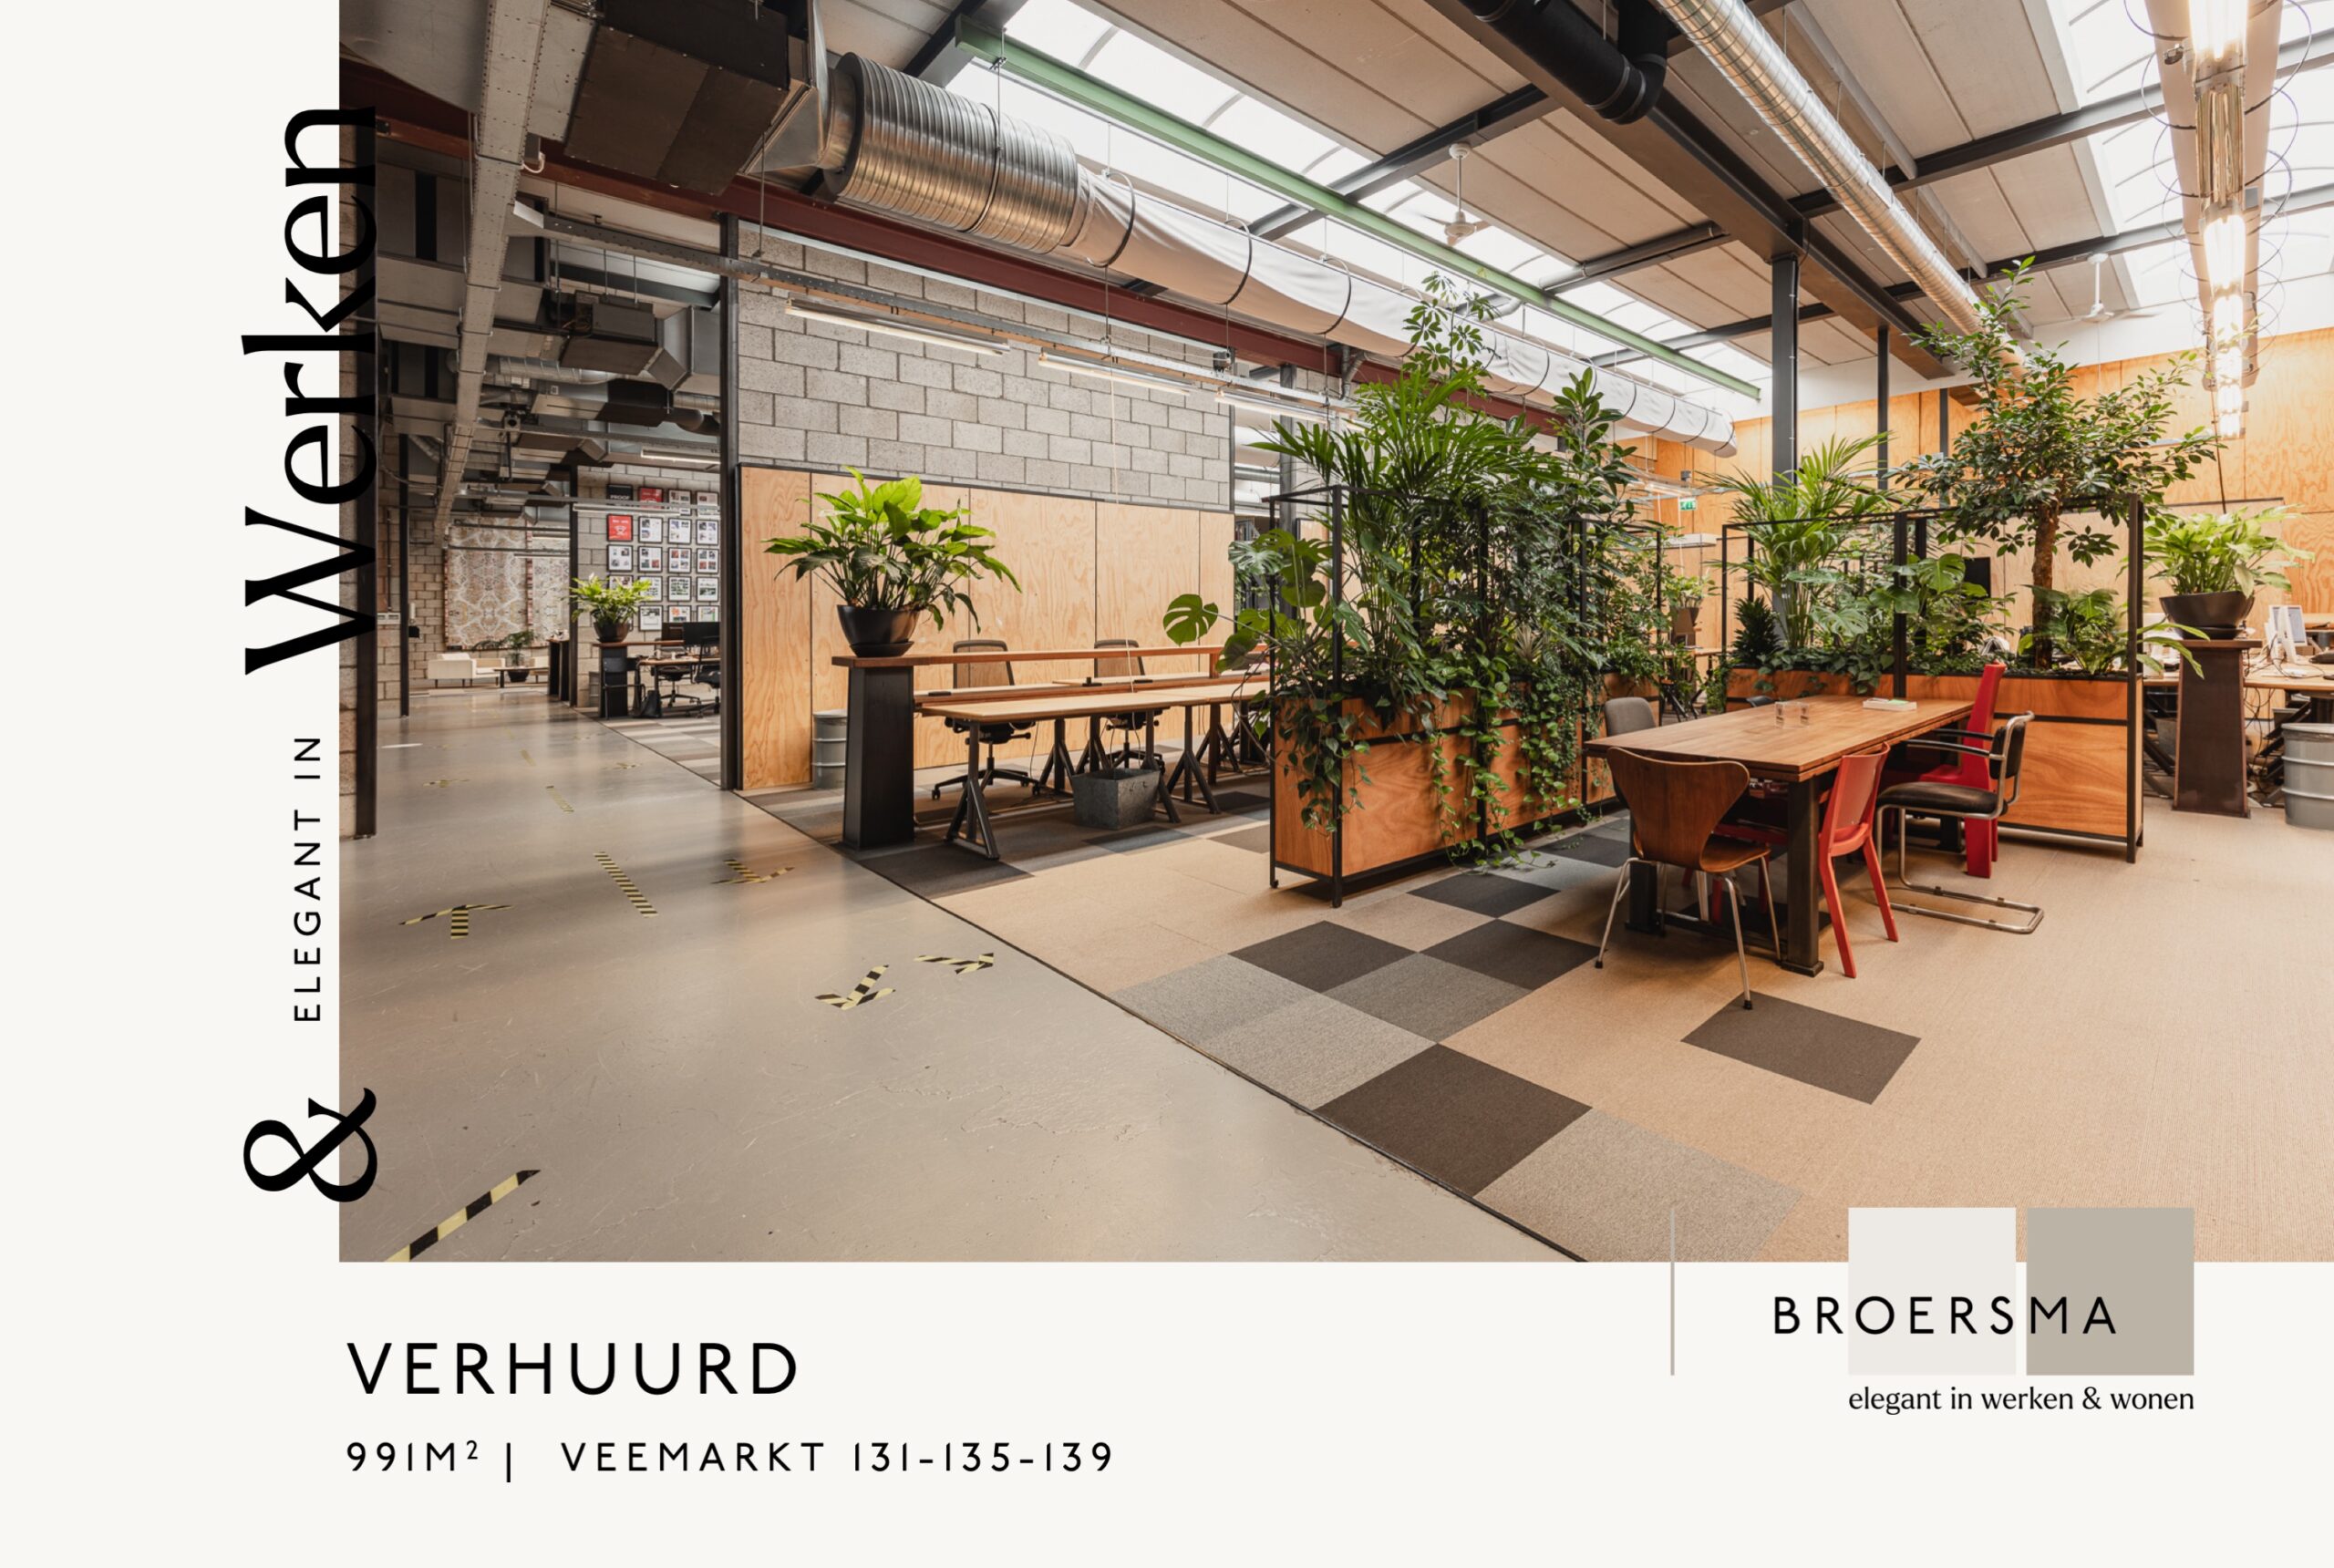 Broersma verhuurt 991 m² bedrijfsruimte op de Veemarkt 131-135-139 te Amsterdam.